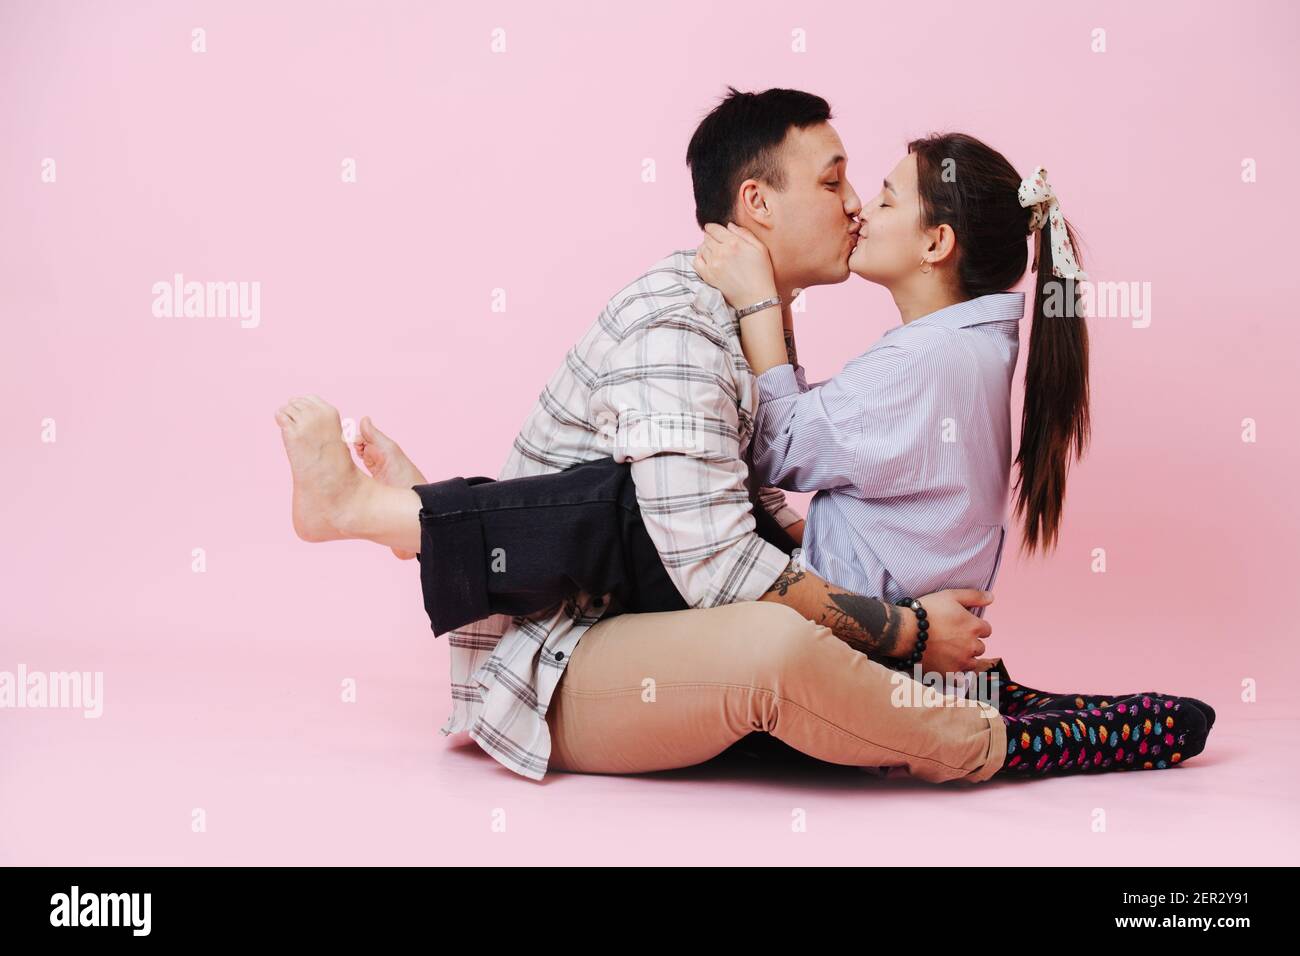 Giovane coppia abbracciando e baciando su sfondo rosa, la ragazza si siede sul ragazzo Foto Stock